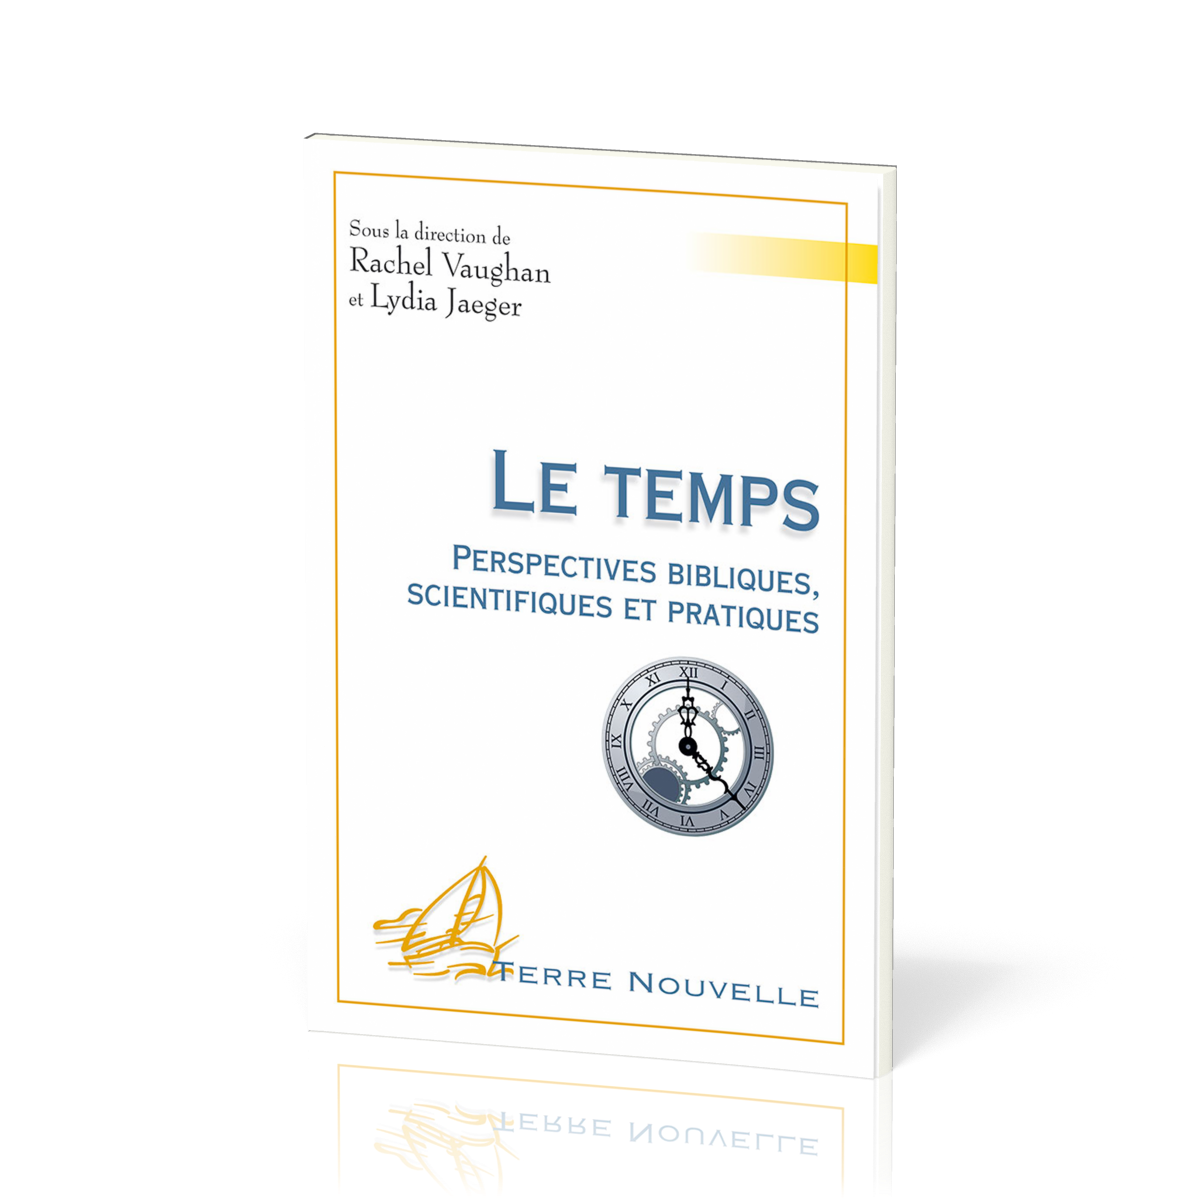 Temps (Le) - Perspectives bibliques, scientifiques et pratiques [collection Terre Nouvelle]